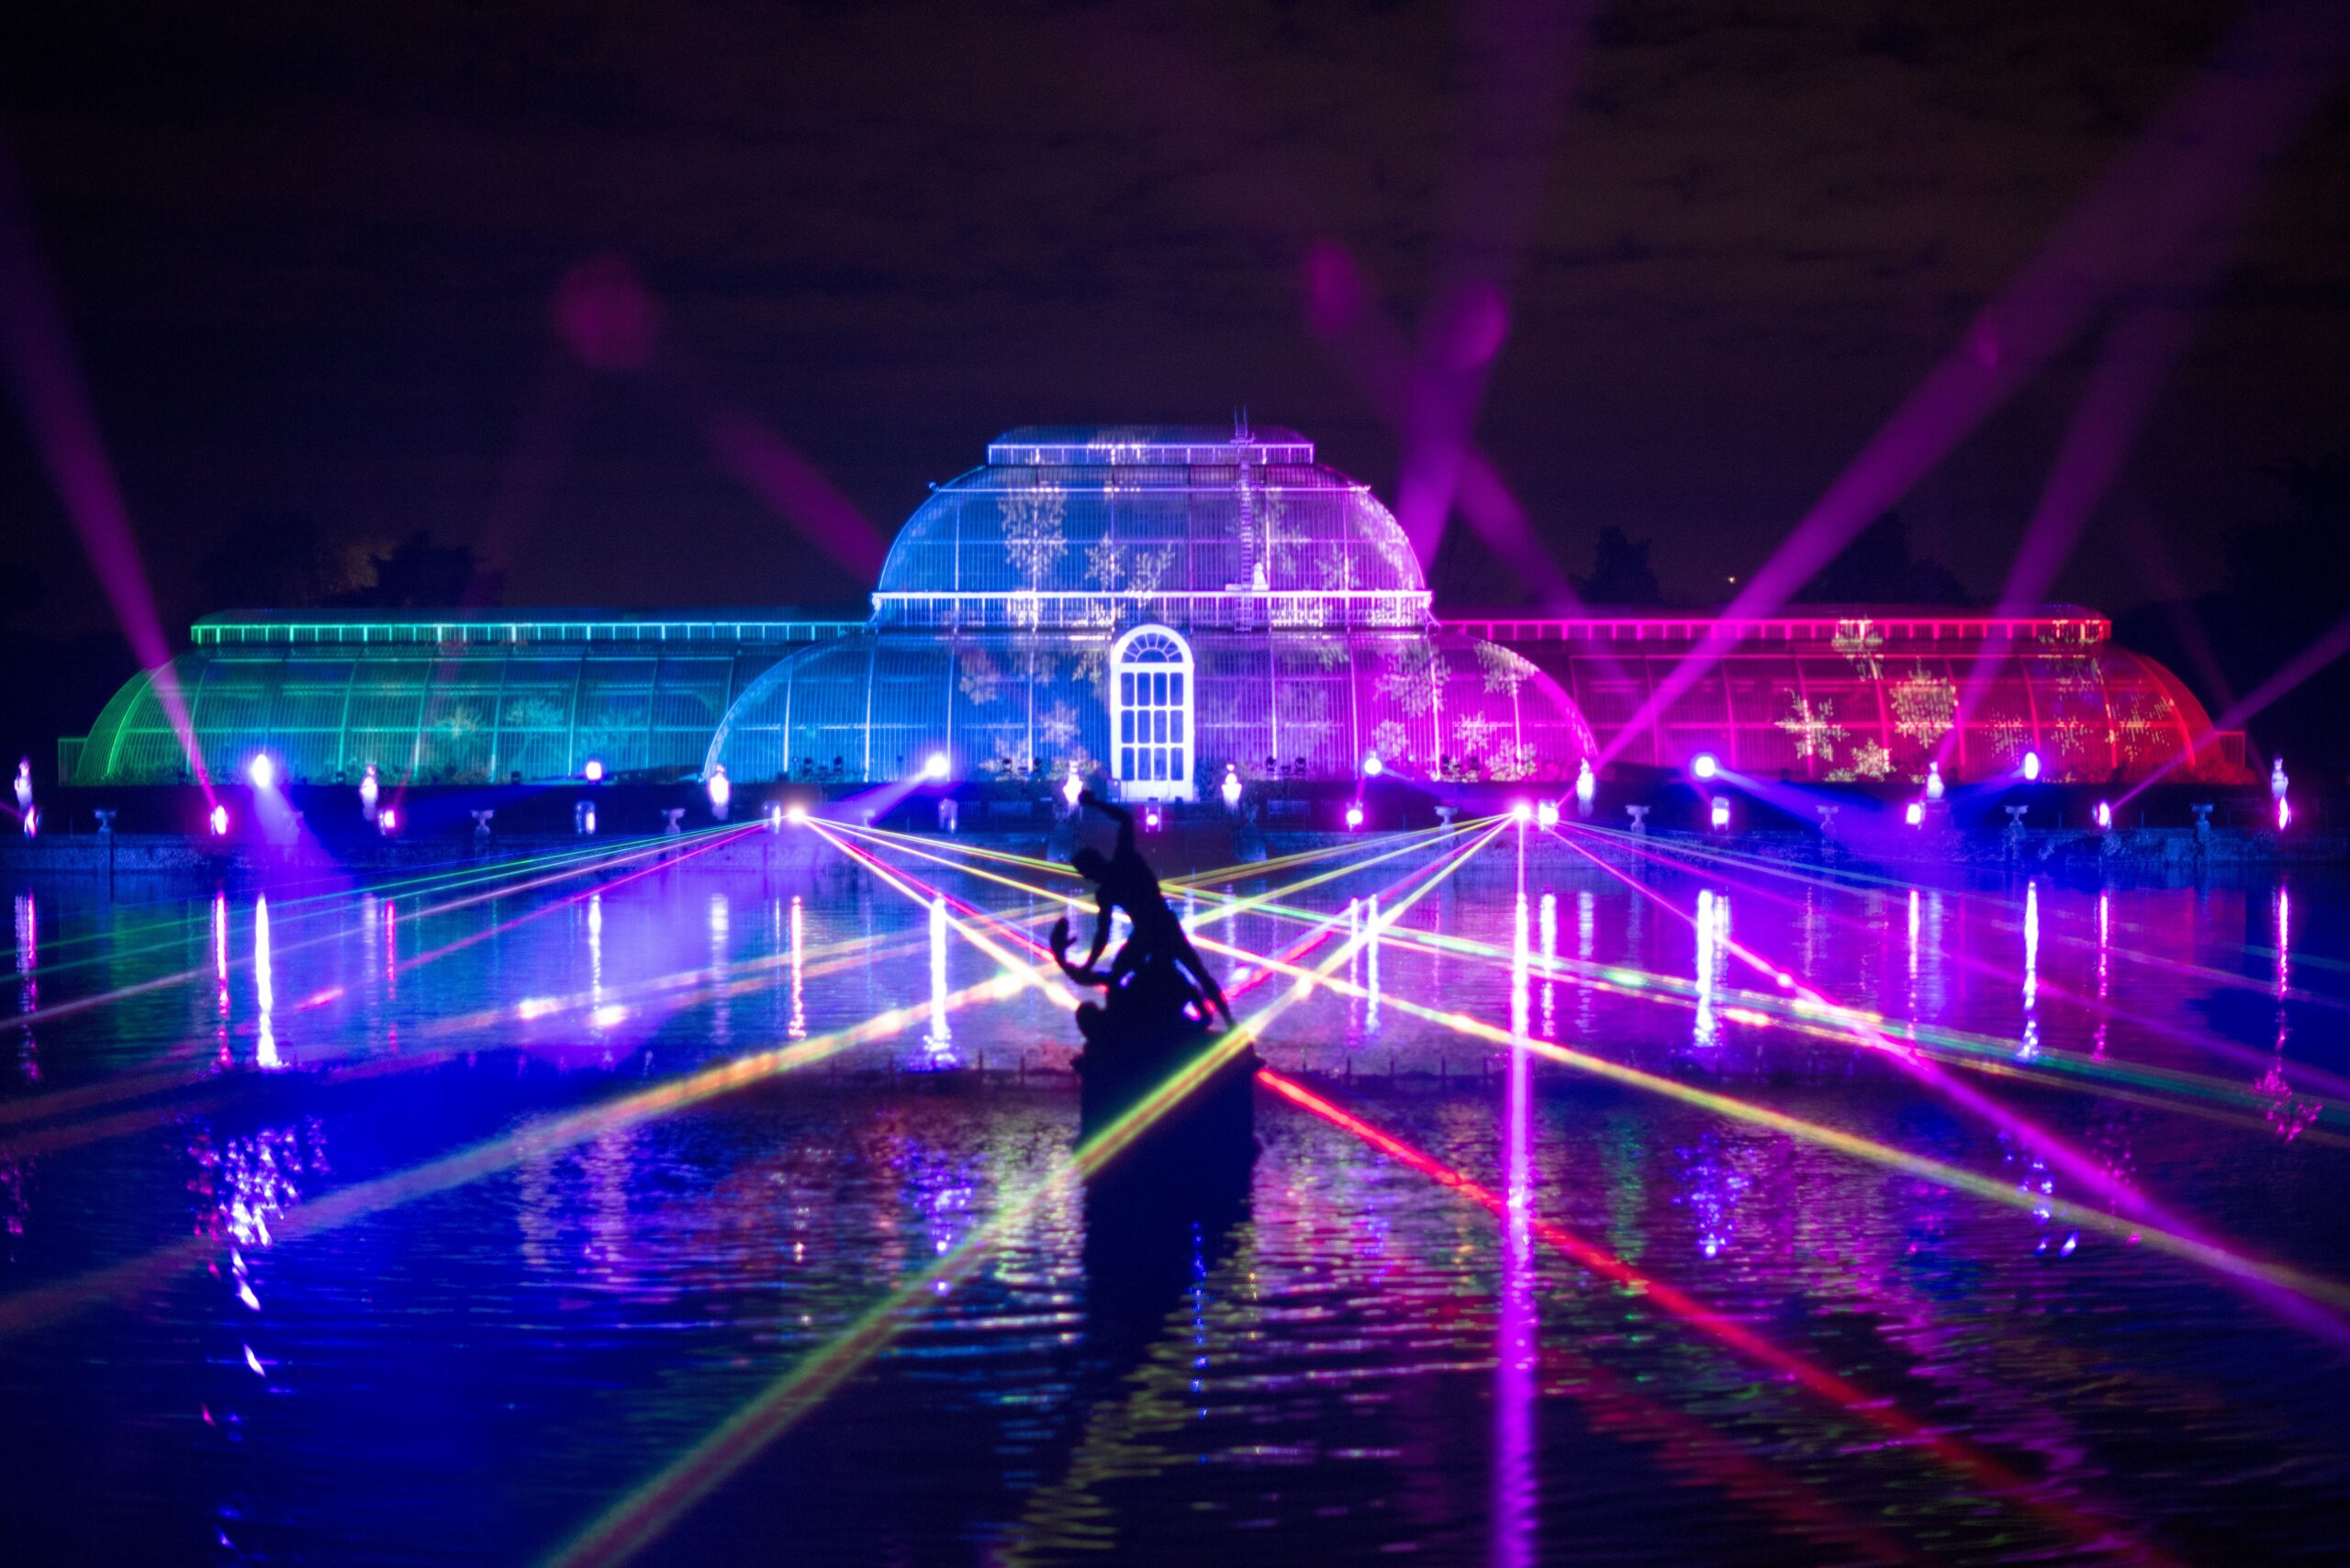 Dazzling illuminations at Kew Gardens